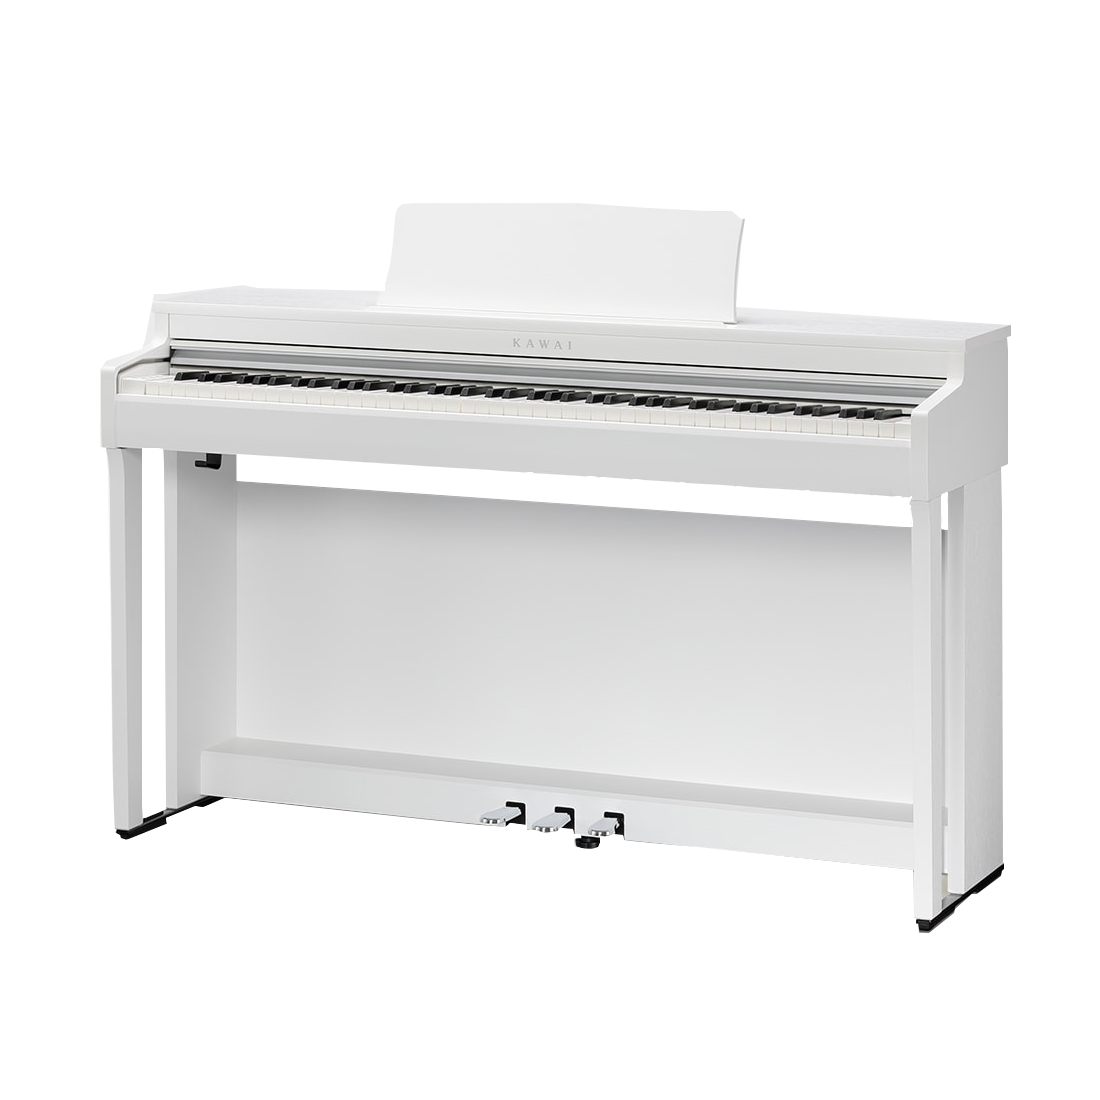 KAWAI CN201 W - цифровое пианино, банкетка, механика Responsive Hammer III, 88 клавиш, цвет белый купить в prostore.me